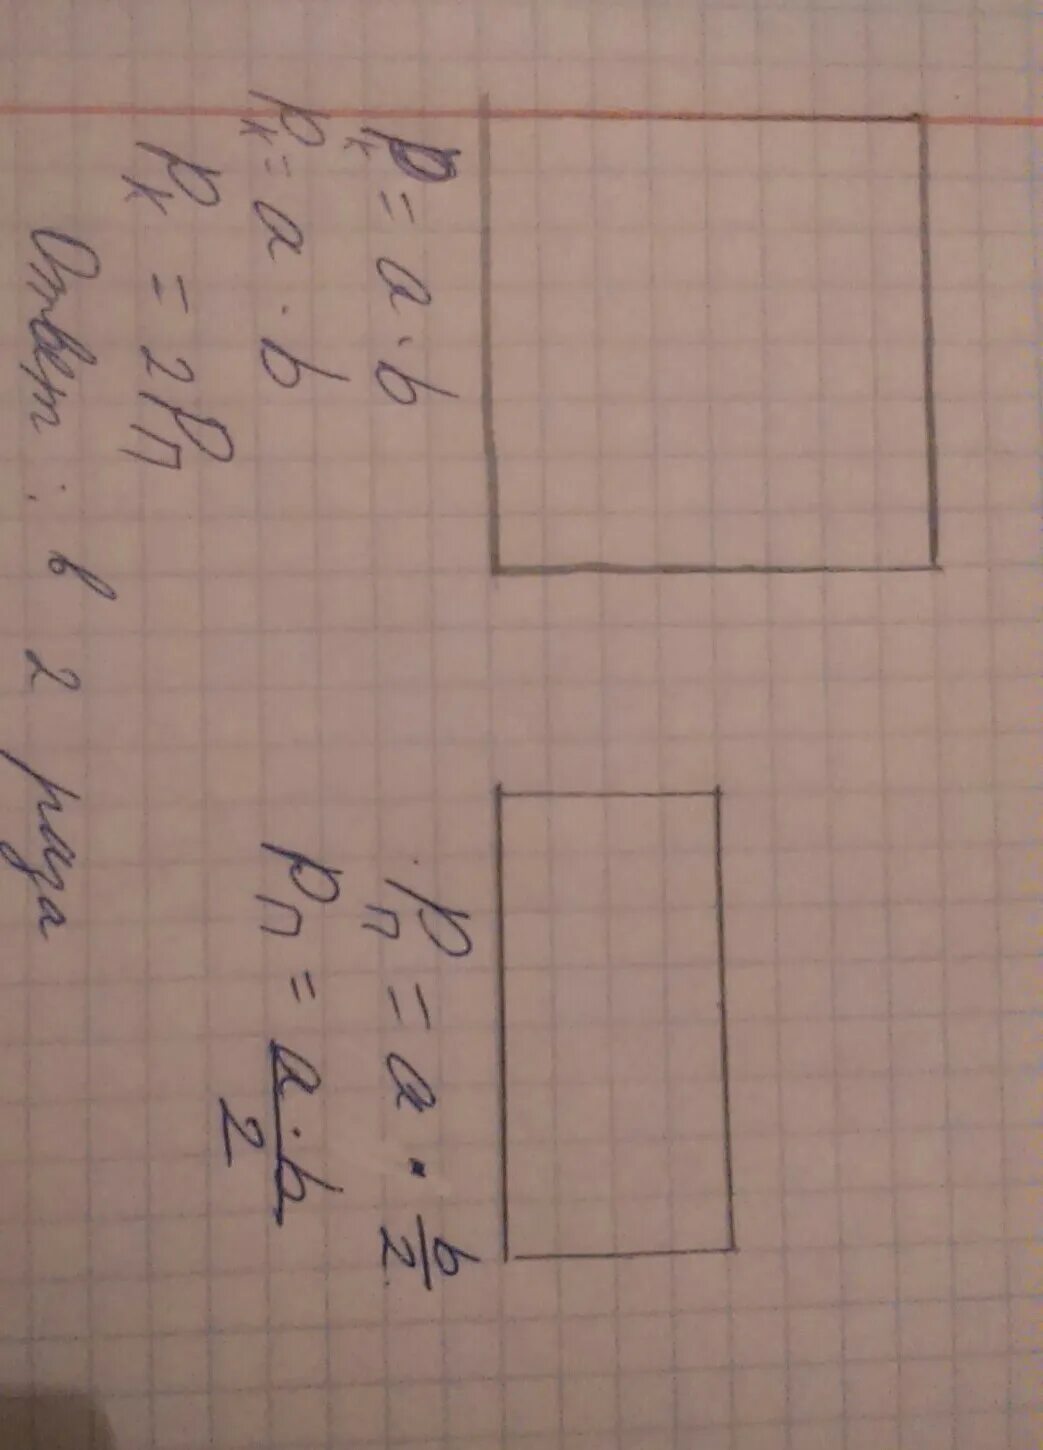 Начерти квадрат длина стороны которого равна 2 см. Длина стороны квадрата равна. Необходимо из прямоугольника со сторонами. Начерти квадрат с длиной стороны 1 дм2.